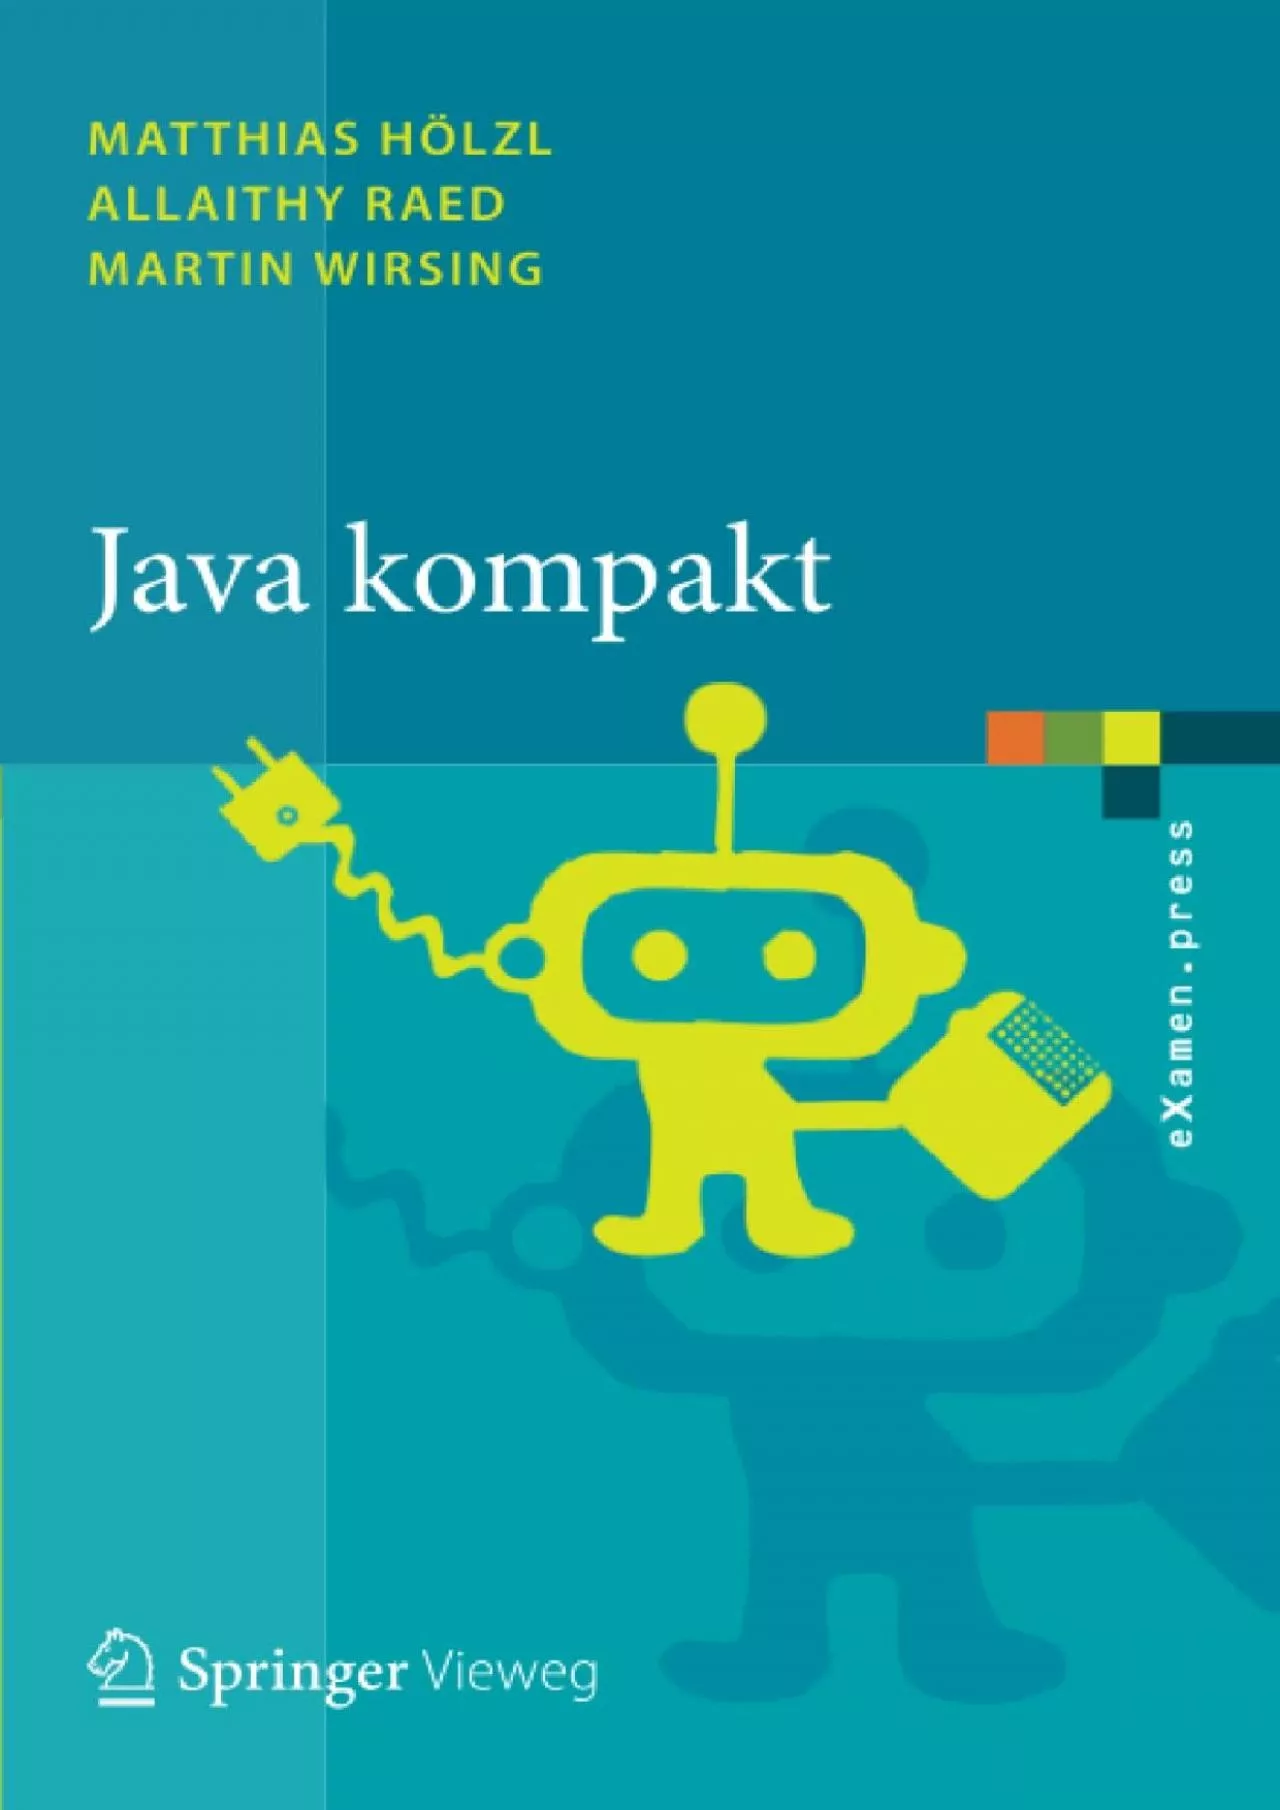 [FREE]-Java kompakt: Eine Einführung in die Software-Entwicklung mit Java (eXamen.press)